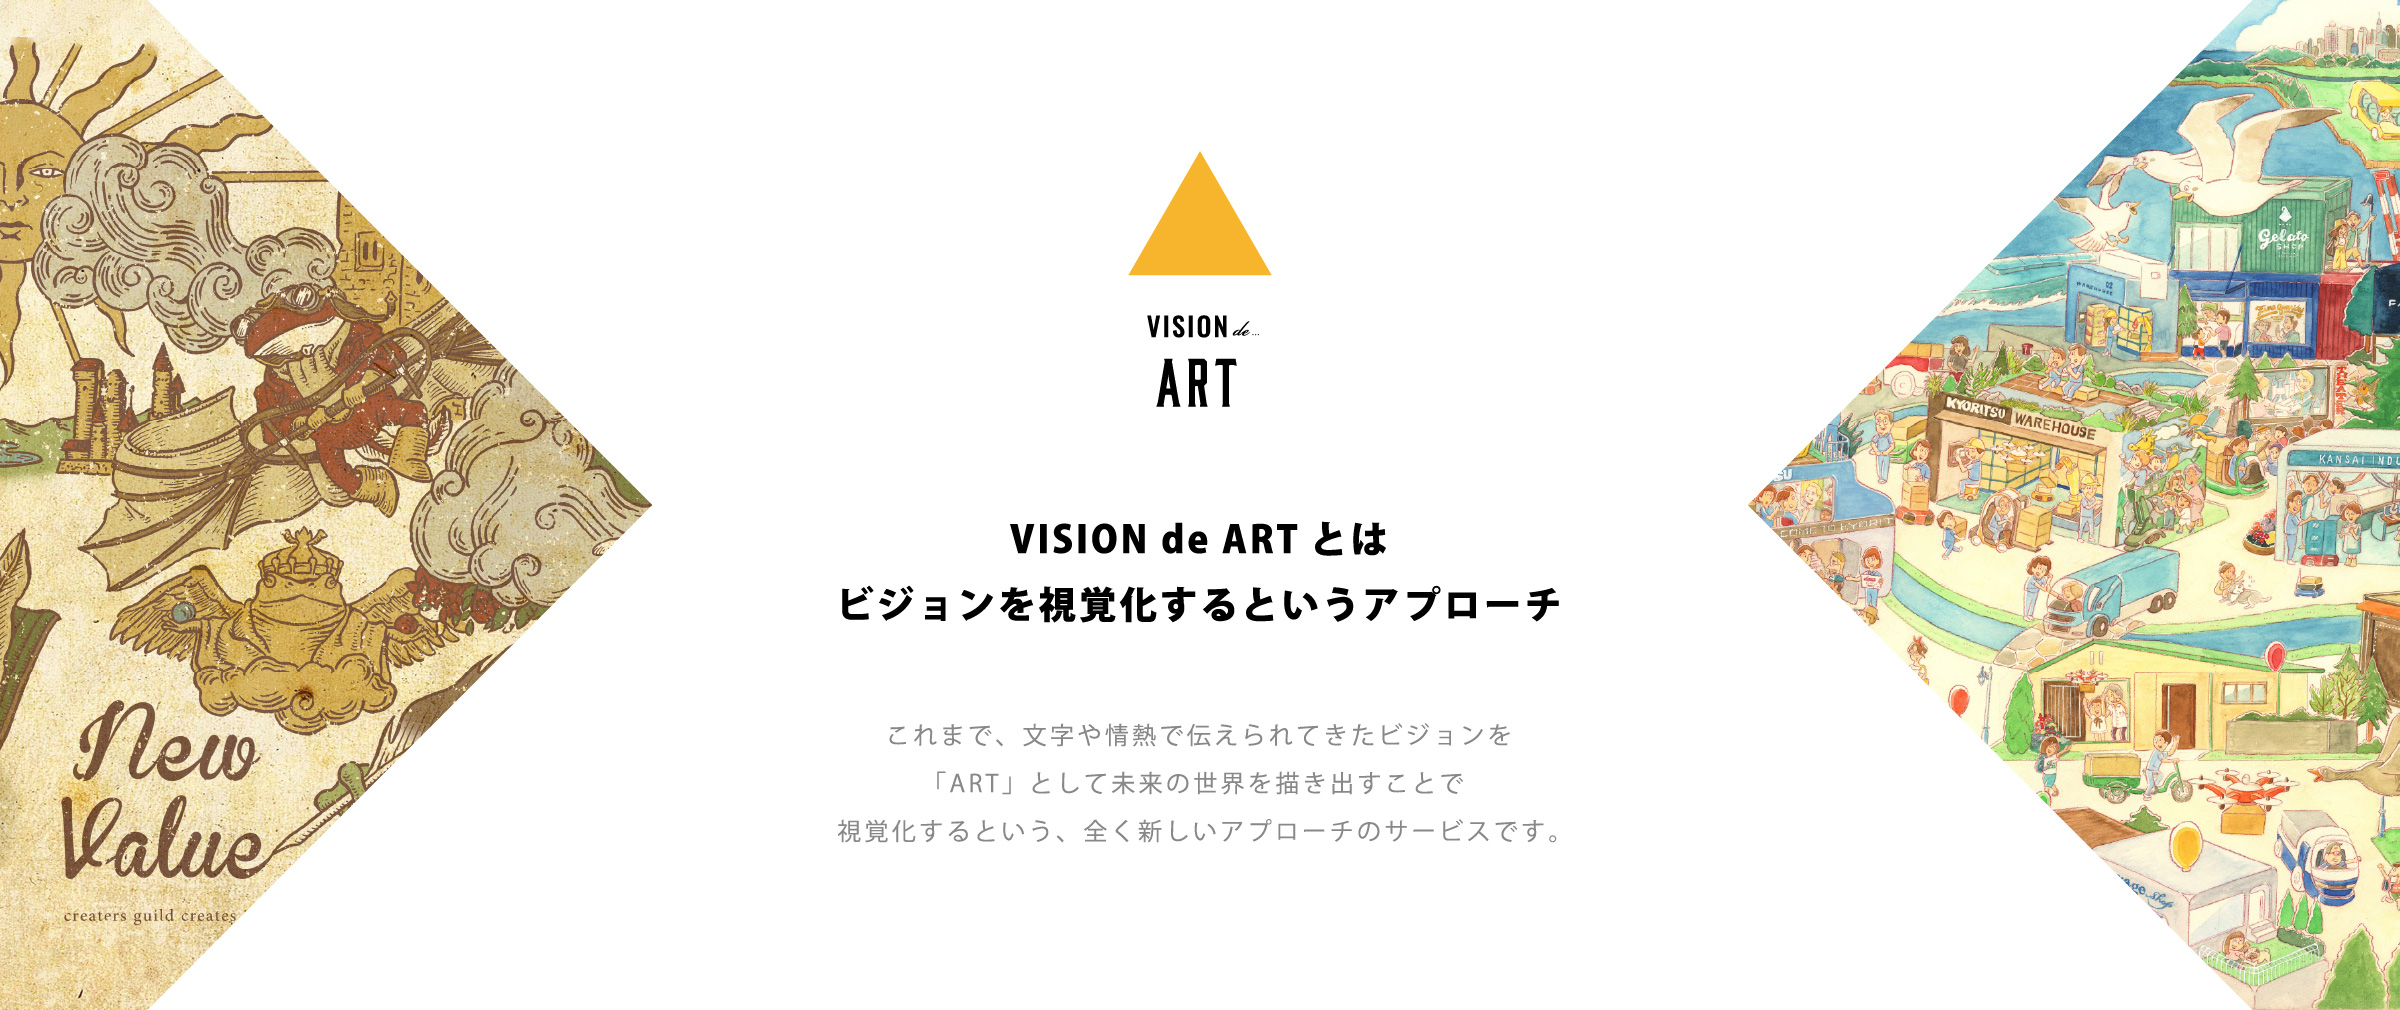 VISION de ARTとはビジョンを視覚化するというアプローチ